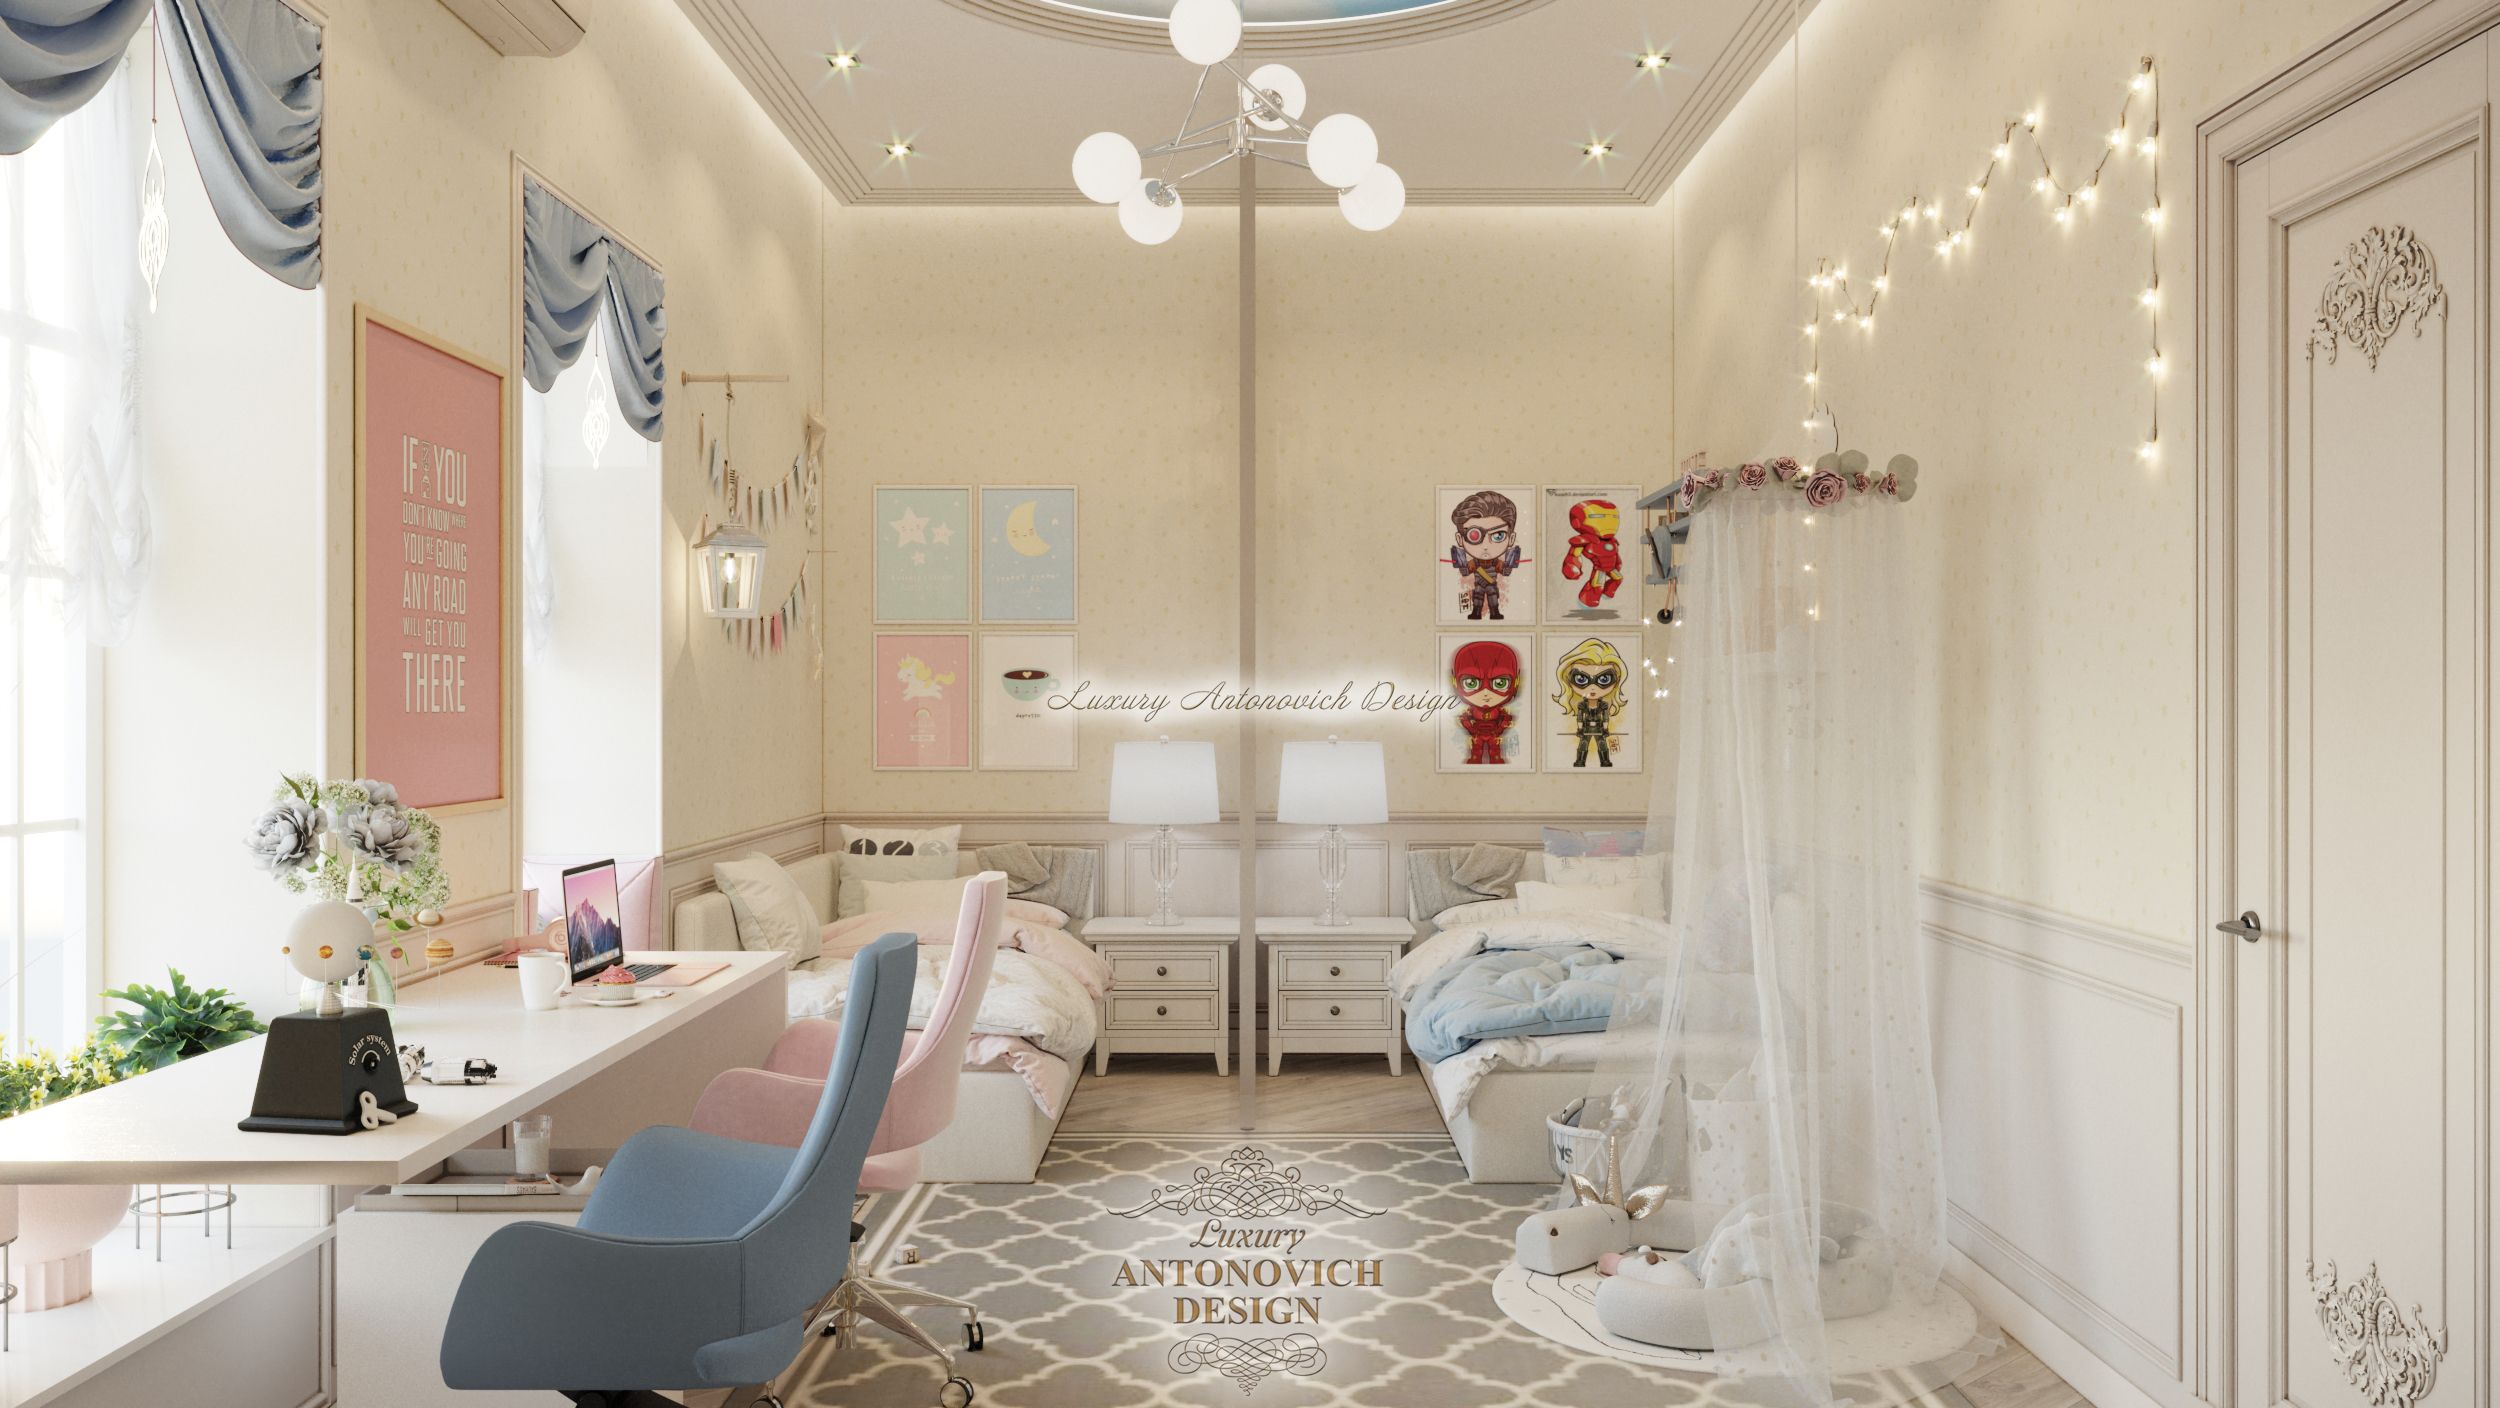 Детская спальня (4) квартира в Праге, Antonovych Design